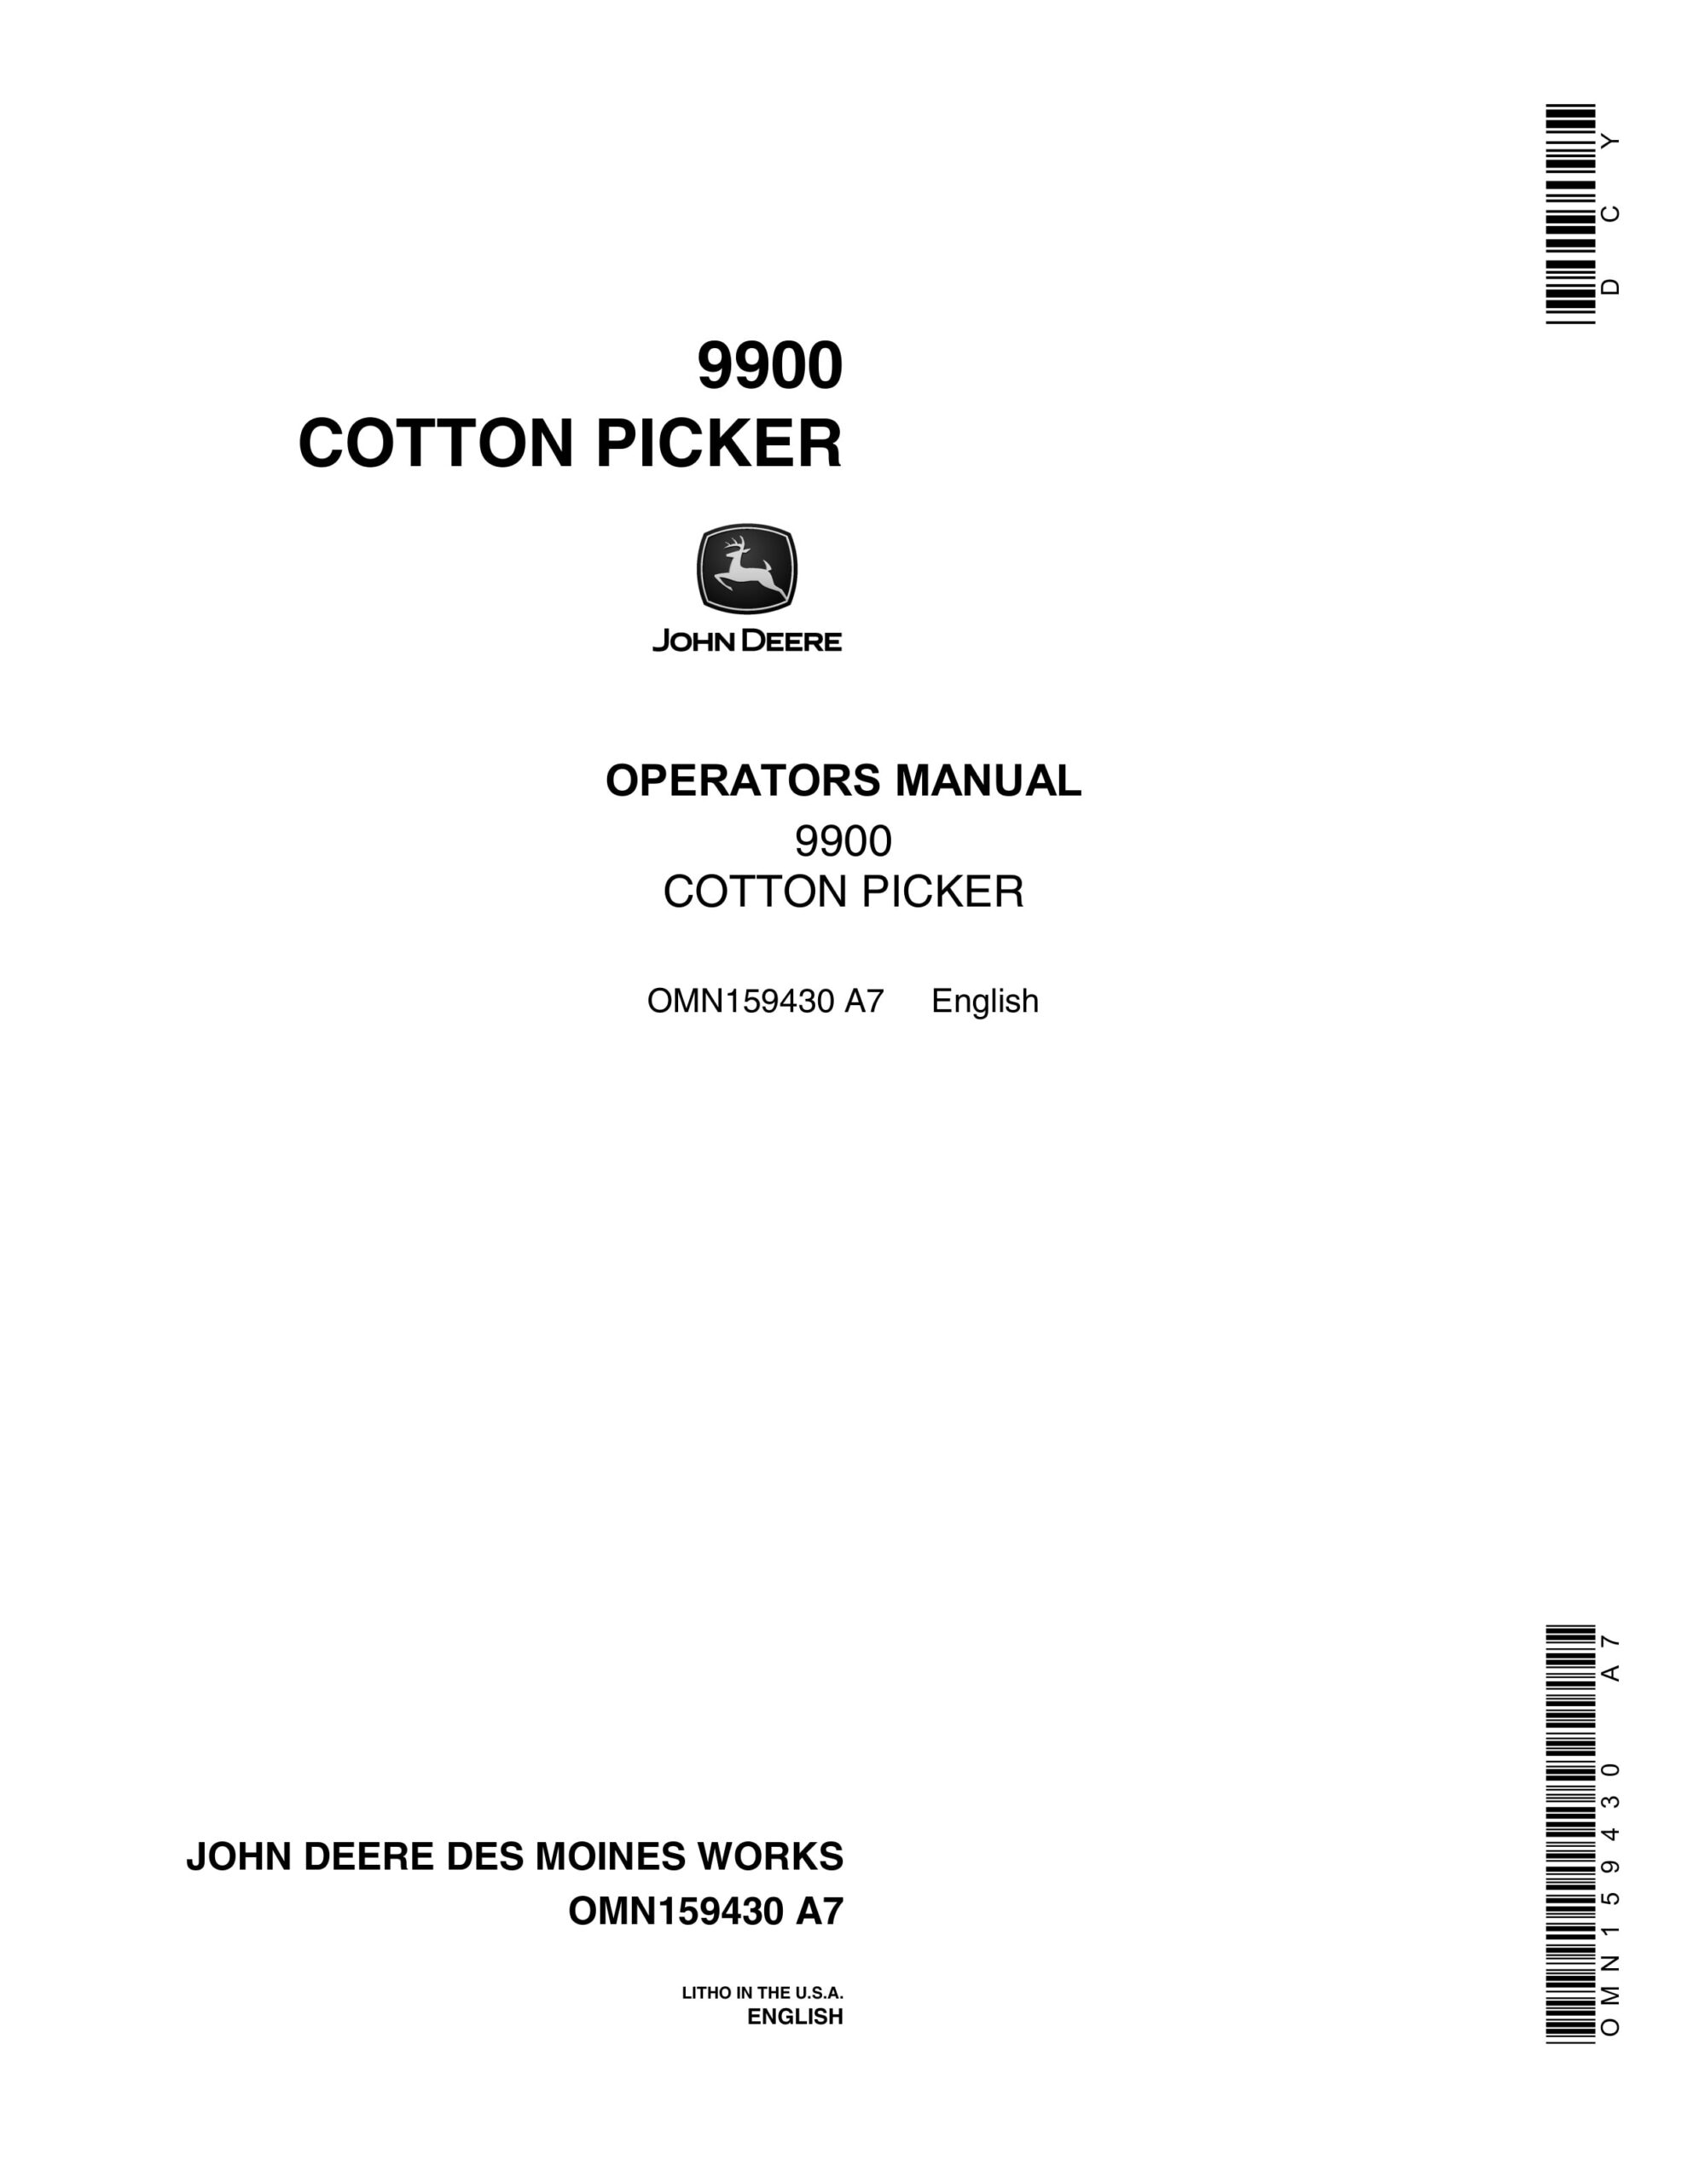 John Deere 9900 COTTON PICKER Operator Manual OMN159430-1